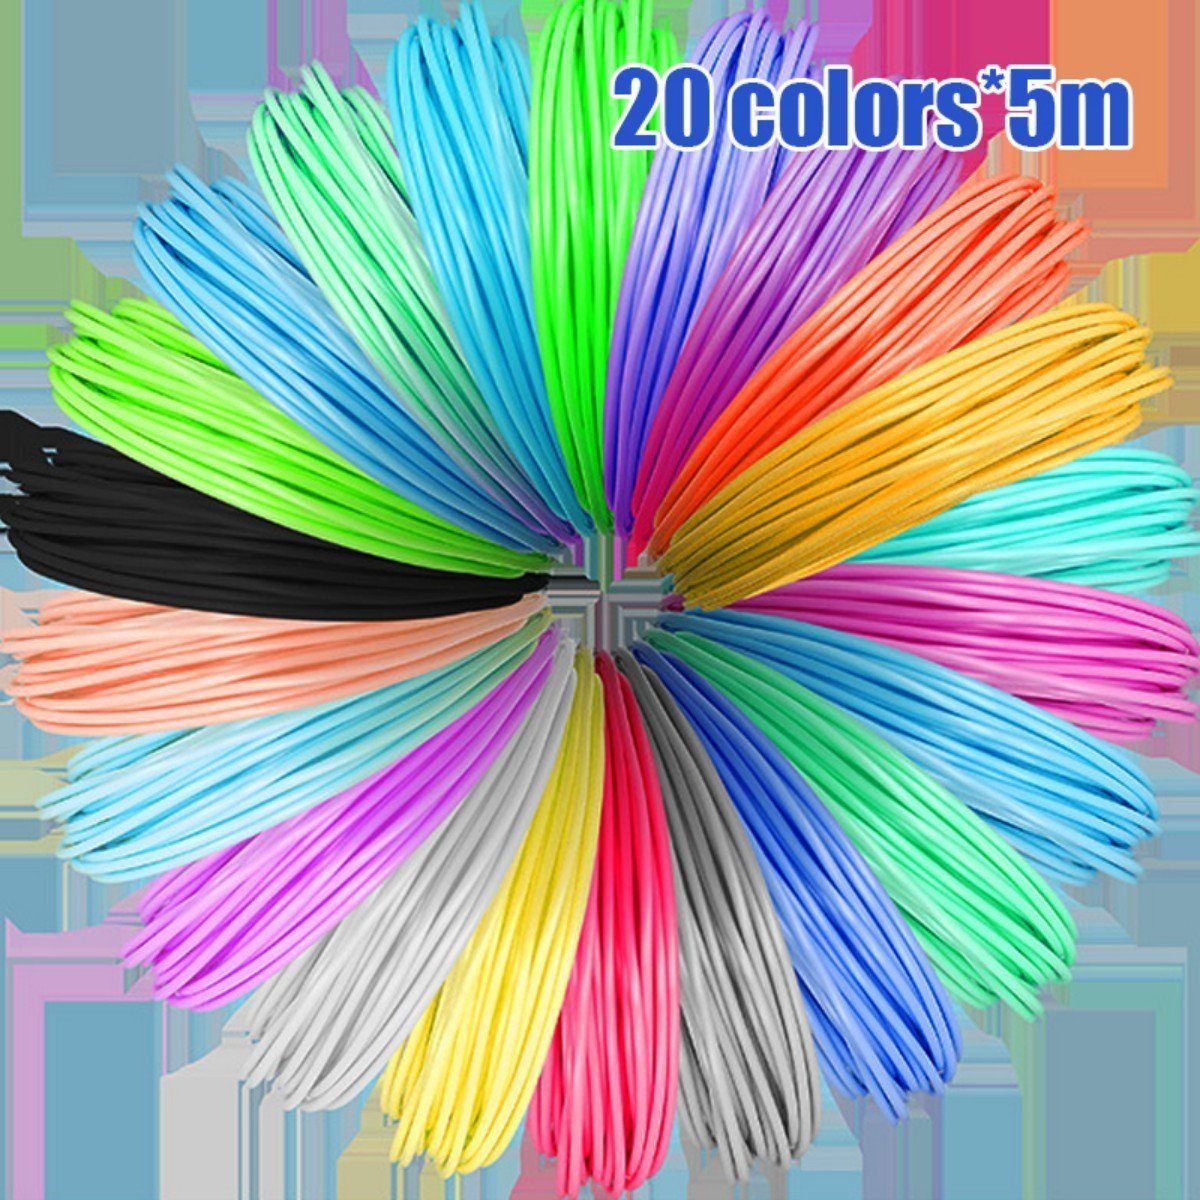 DOPWii 3D-Drucker-Stift 3D Stifte,3D-Zeichenstift,20 Φ1,75 Blua m mm-100 Farben